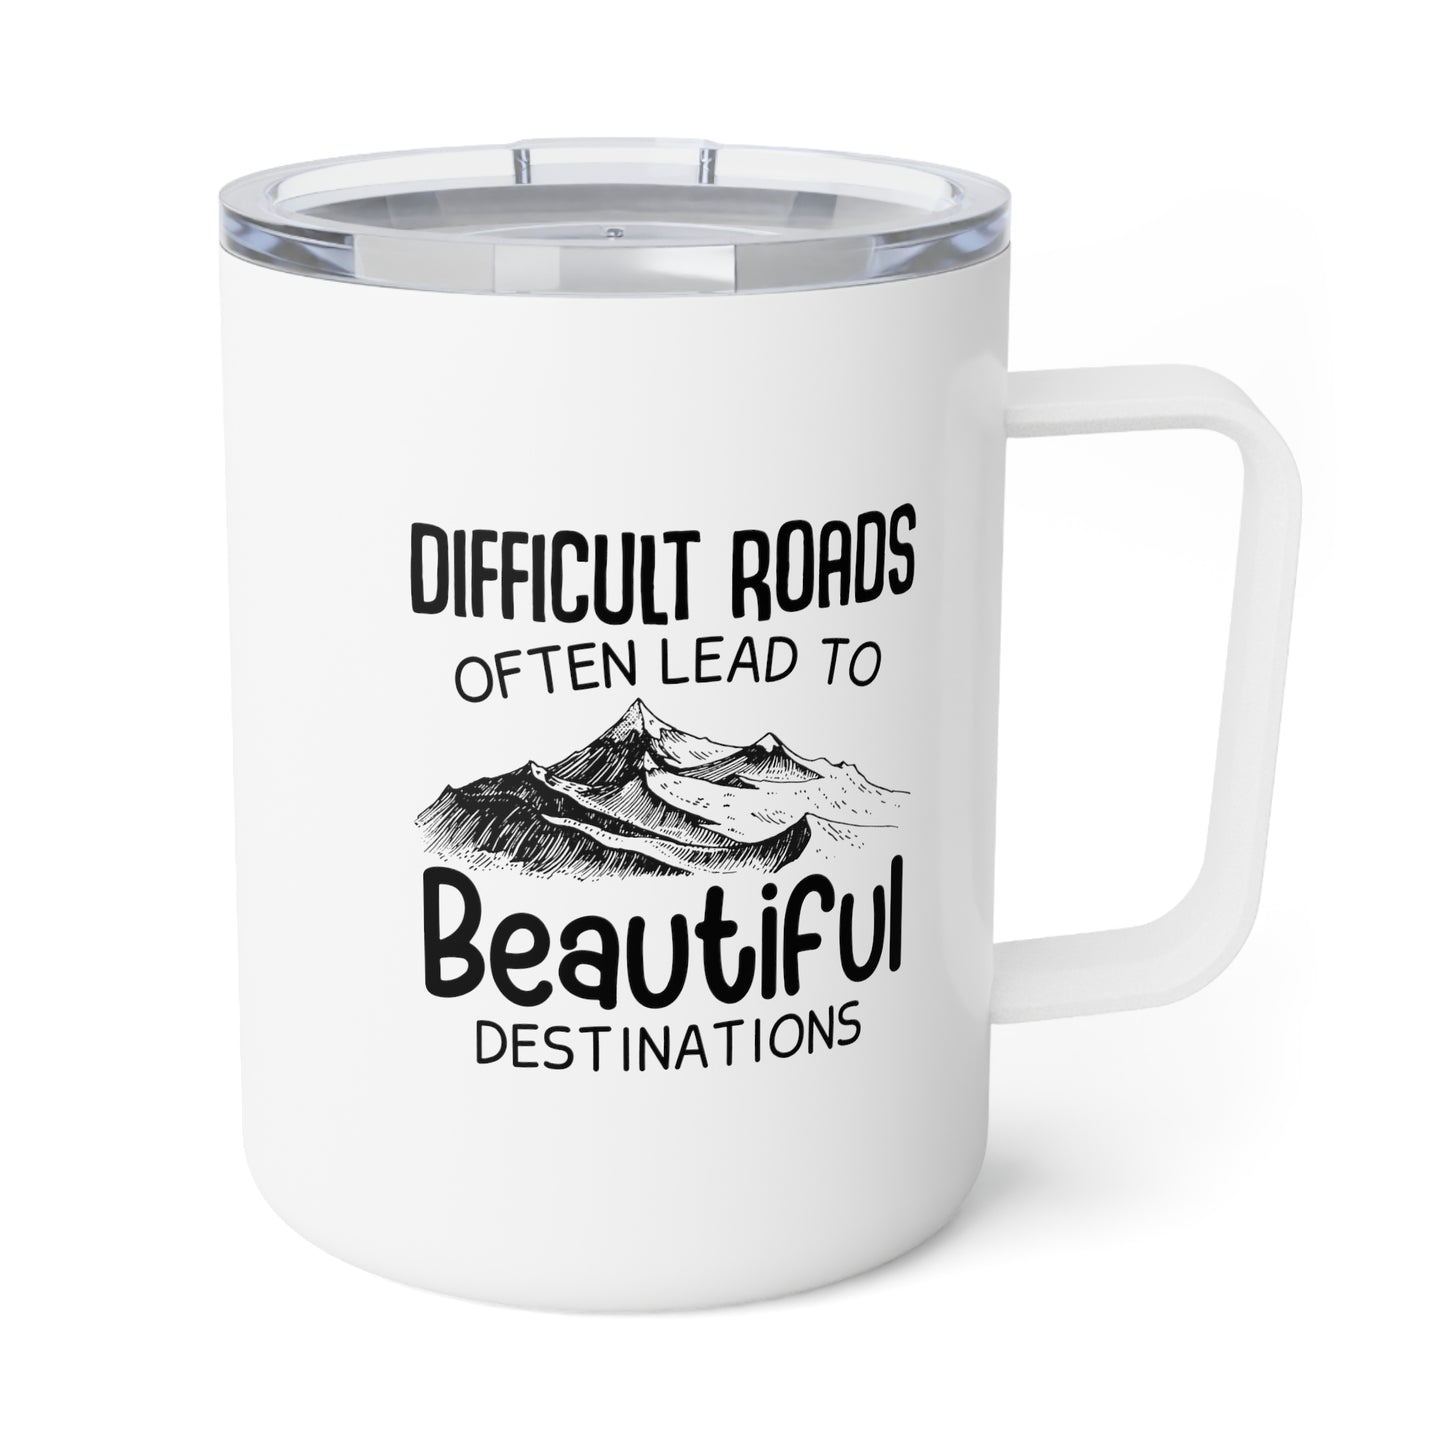 Difficult Roads Travel Insulated Coffee Mug, 10oz Motivational Mug